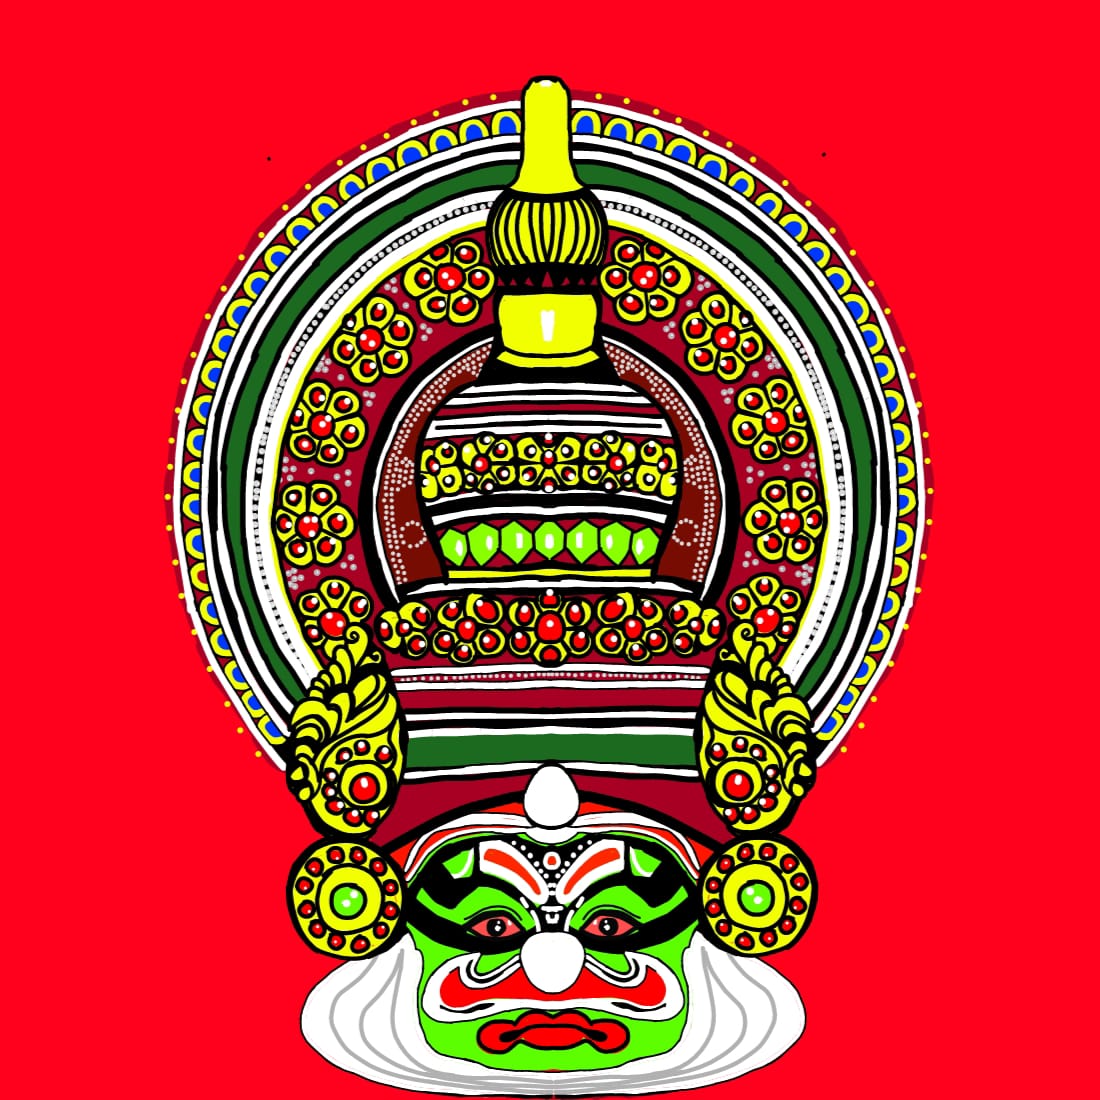 Kadhakali cover image.